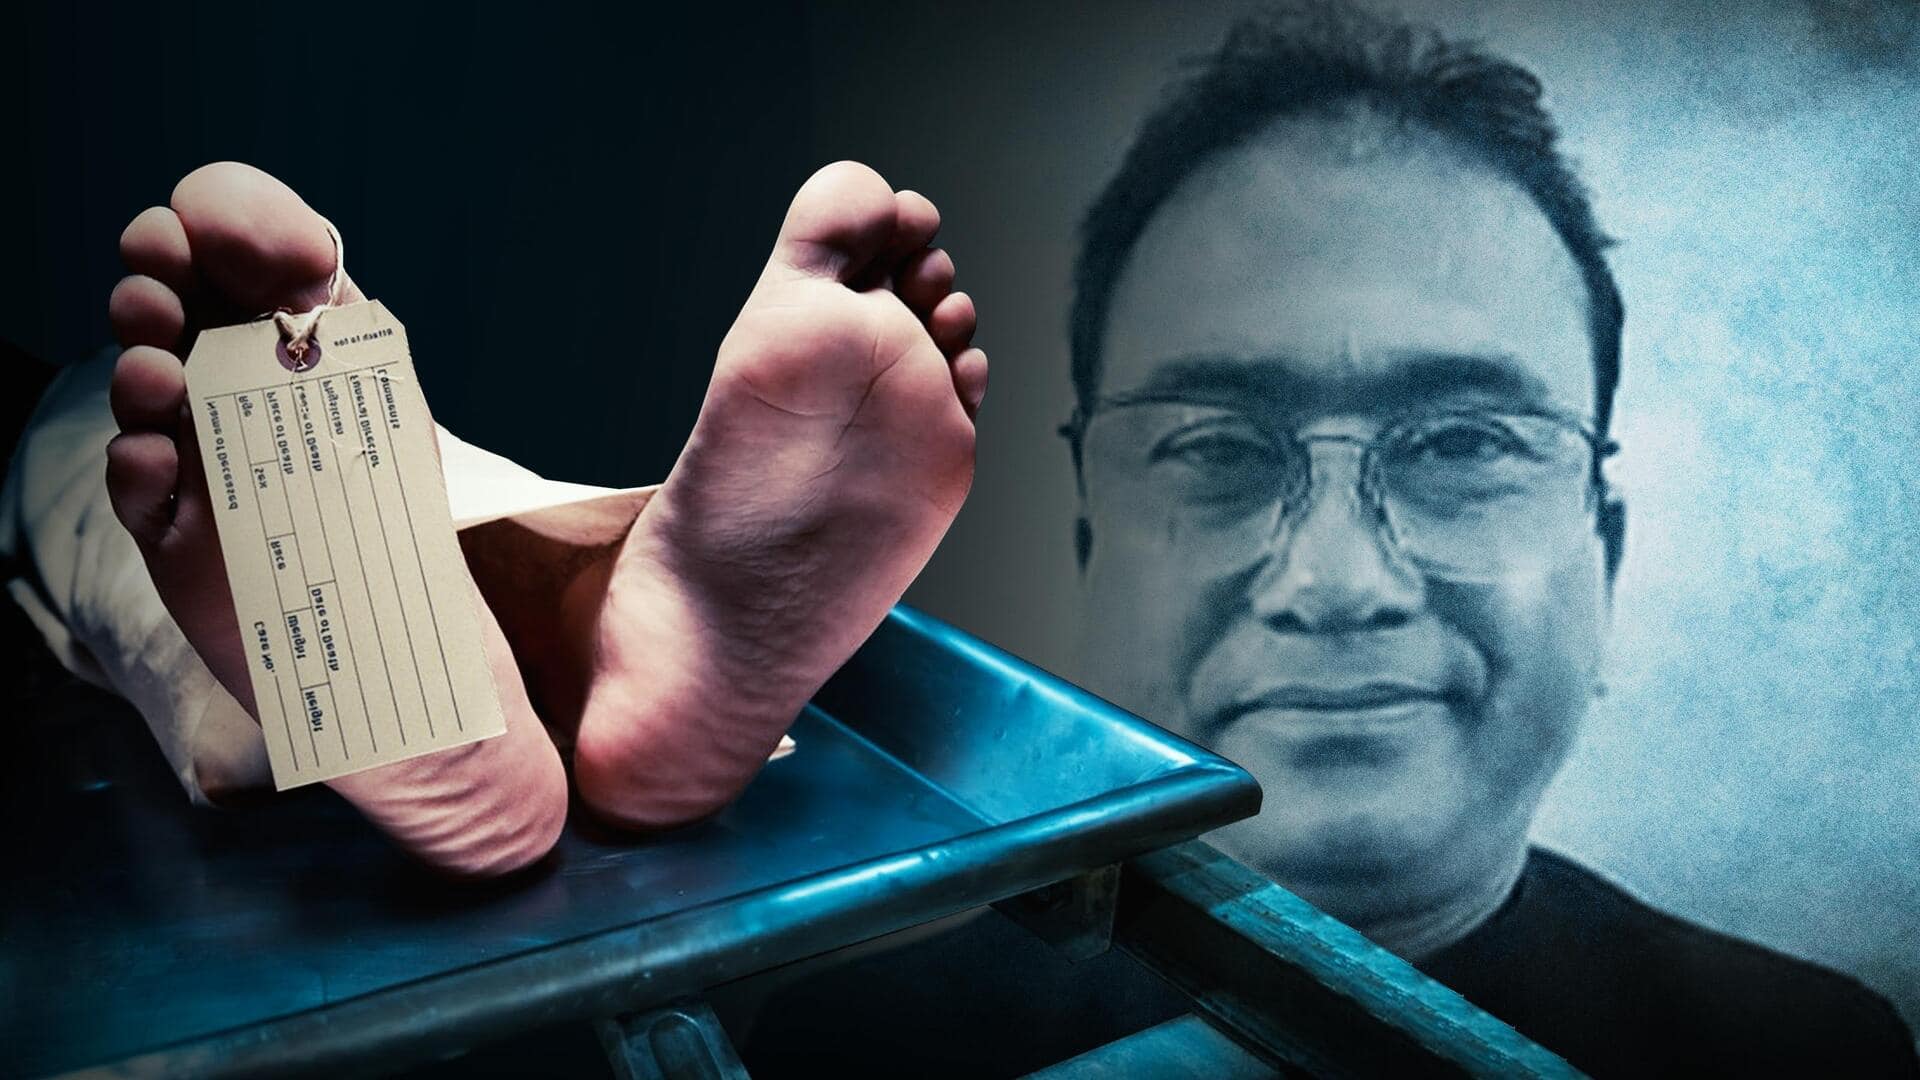 बांग्लादेश के सांसद की कोलकाता में हत्या; कई दिनों से गायब थे, शव की तलाश जारी